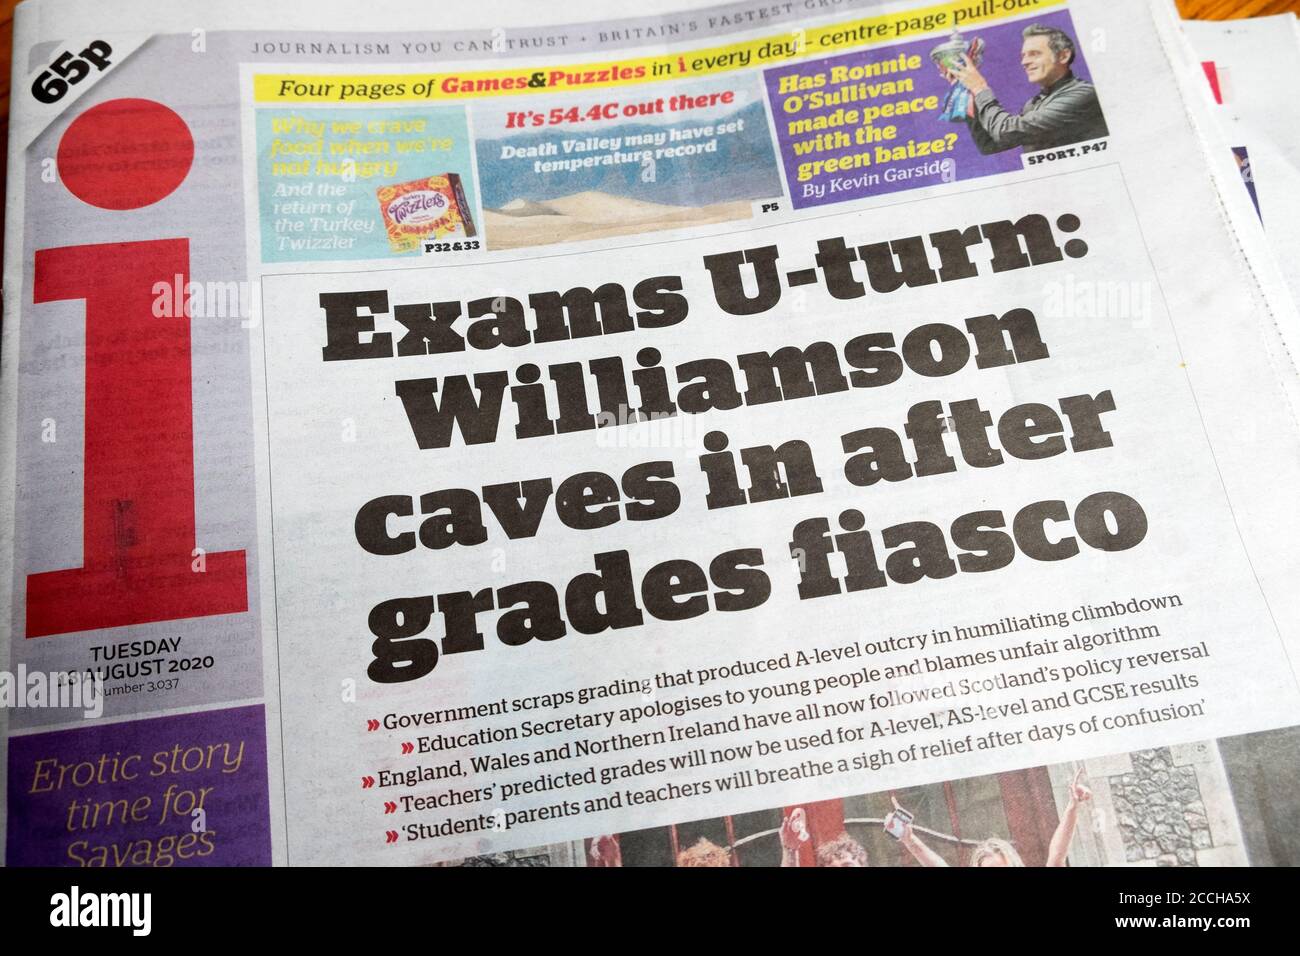 'Examens U-tour: Willimson grottes dans après les grades fiasco' i titre du journal page d'accueil article en août 2020 Londres Angleterre Royaume-Uni Banque D'Images